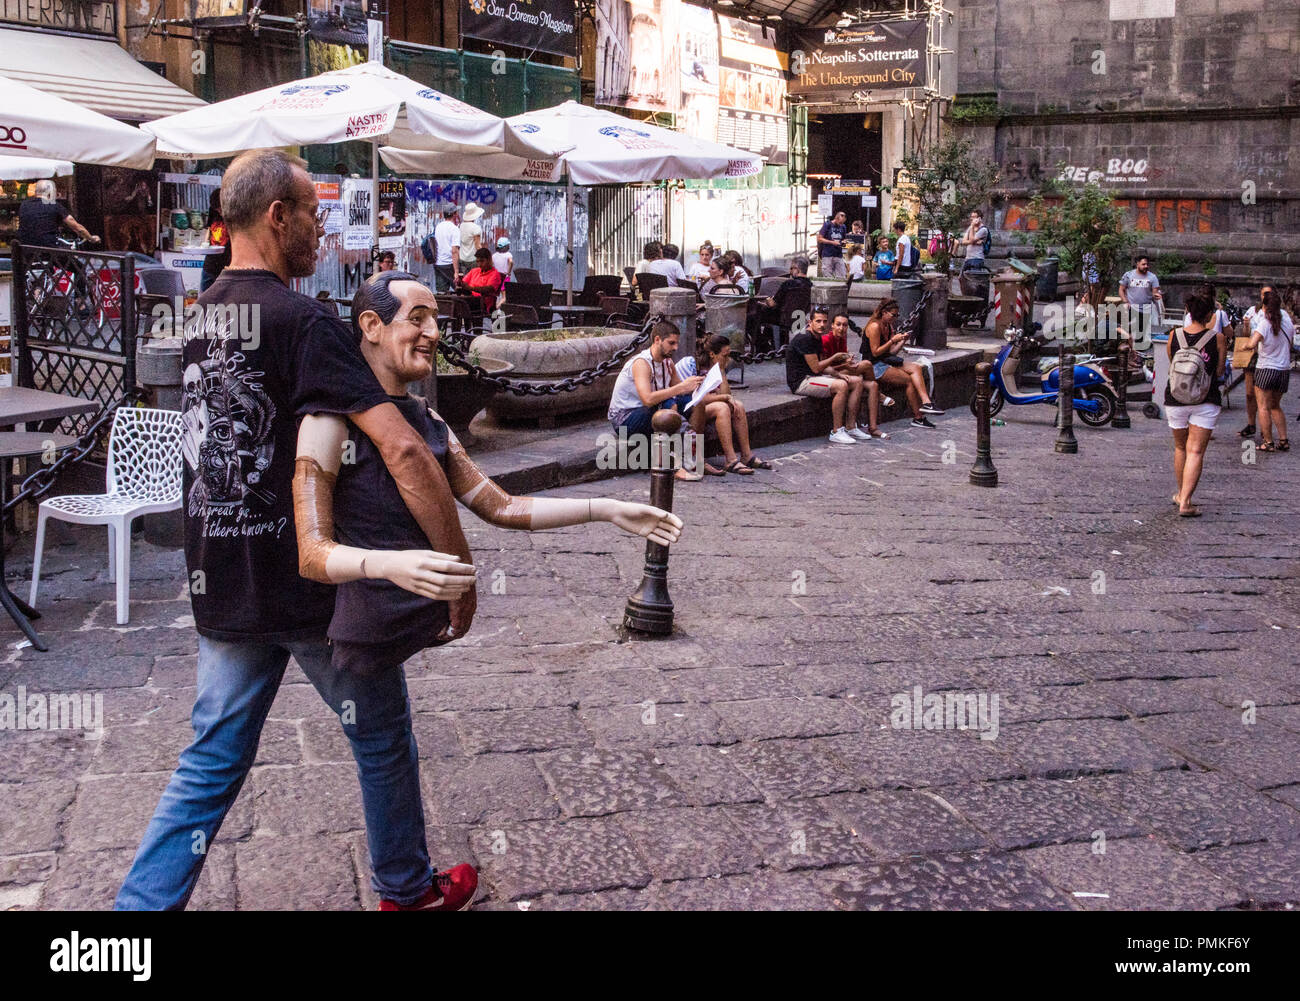 Mann zu Fuß durch Straße, Durchführung dummy der berühmten italienischen Schauspieler Antonio De Curtis, besser bekannt als Toto, Neapel, Italien, Europa bekannt Stockfoto